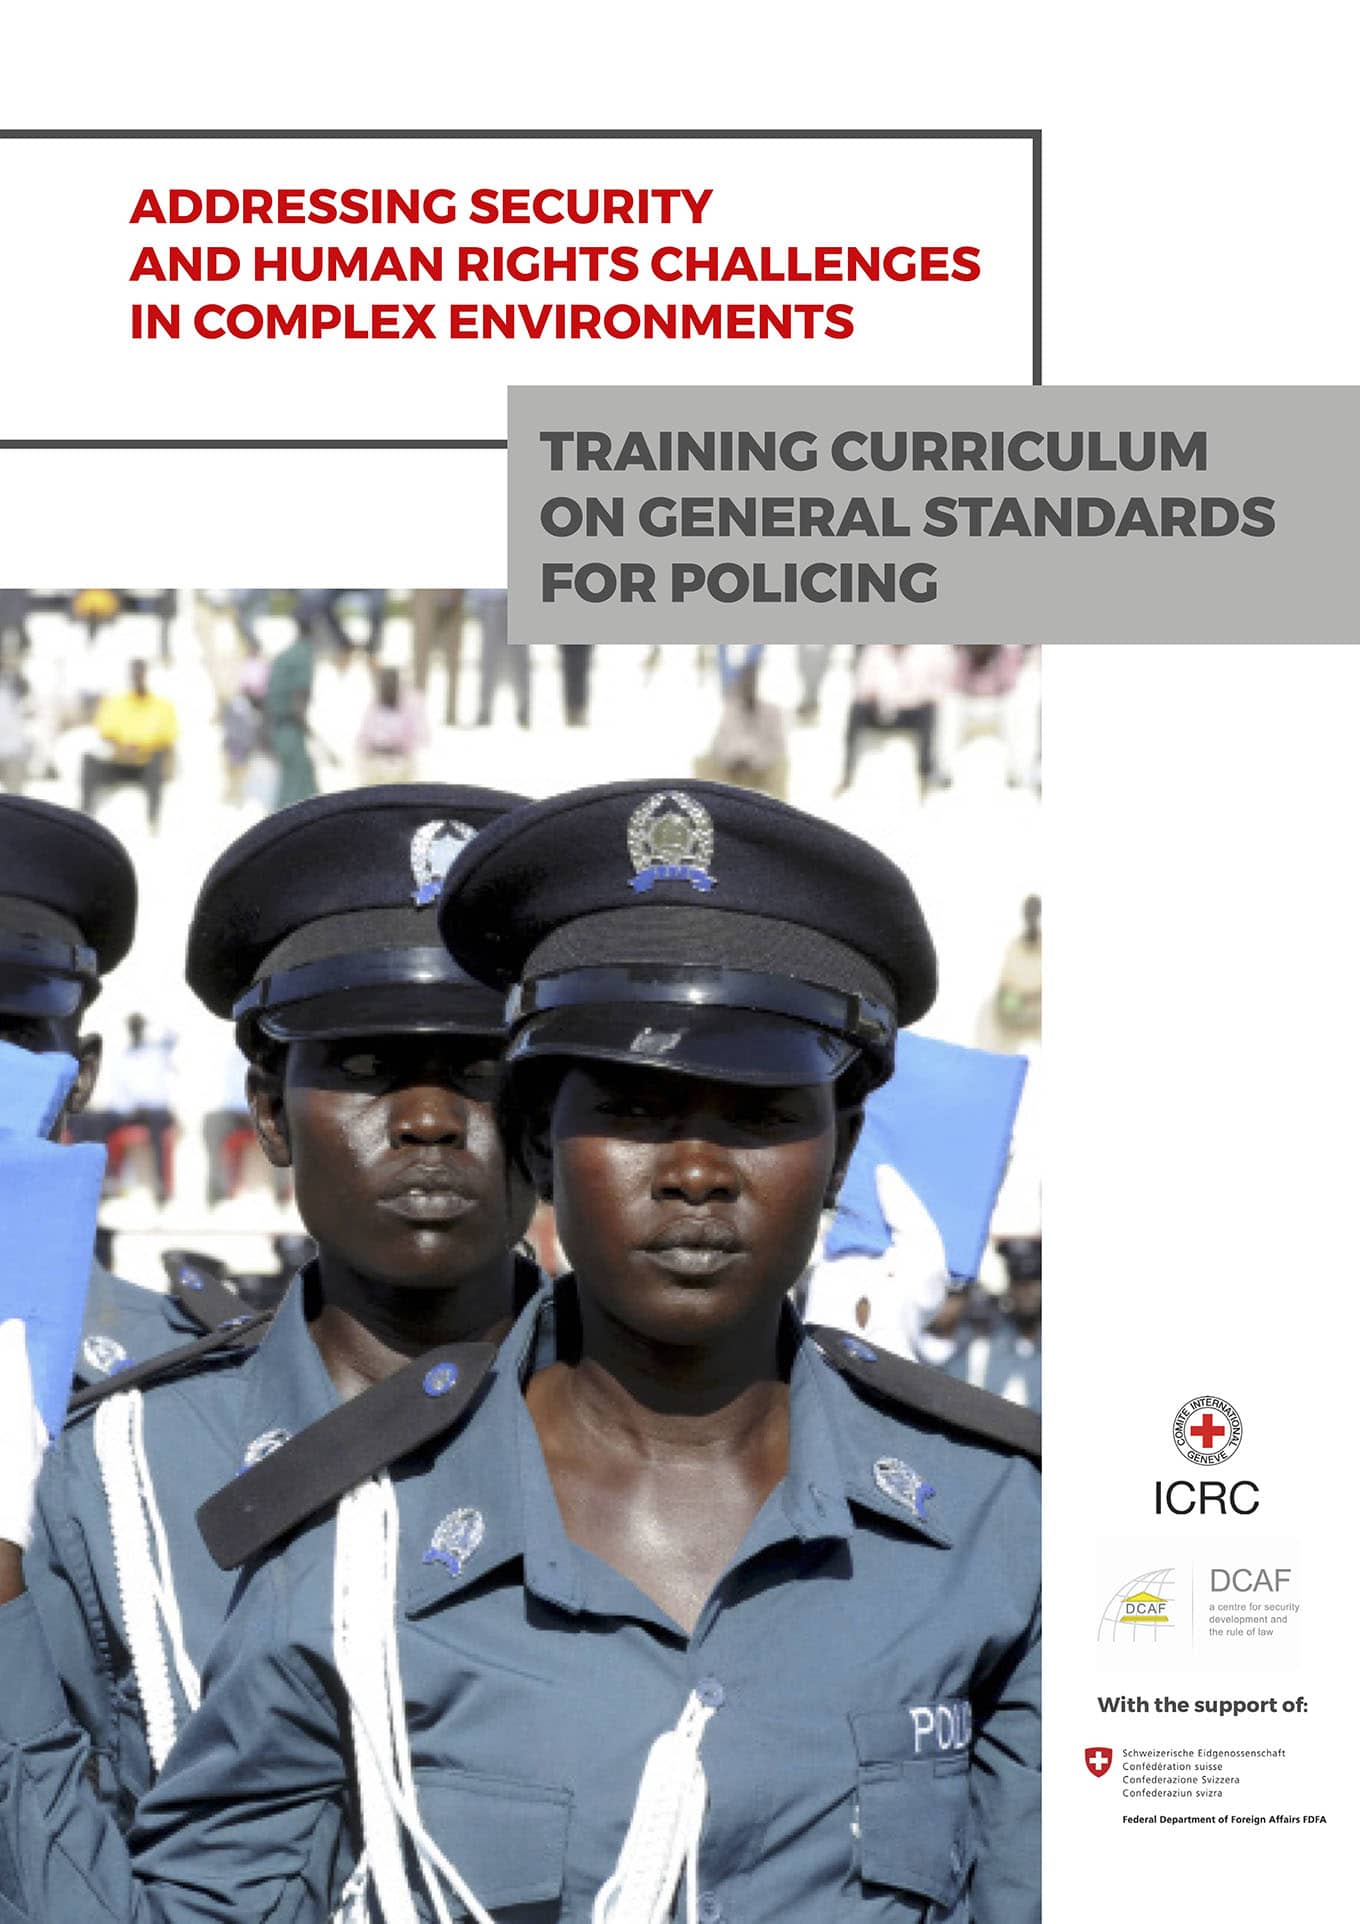 Currículo de capacitación de normas generales aplicables a la actuación policial (DCAF y CICR, Septiembre 2018)